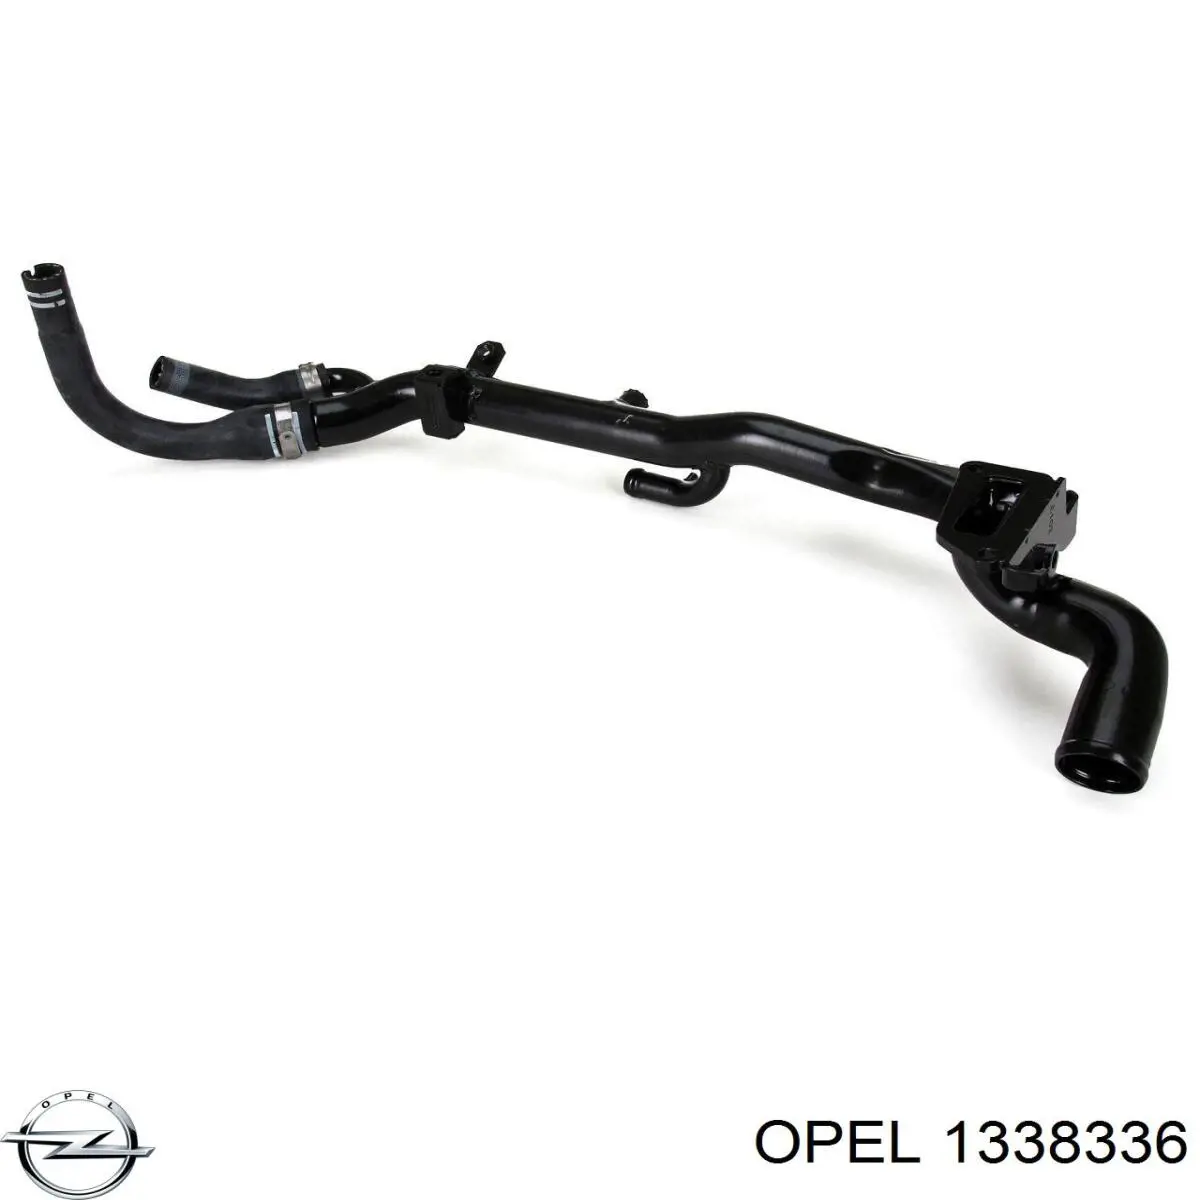 1338336 Opel manguera (conducto del sistema de refrigeración)